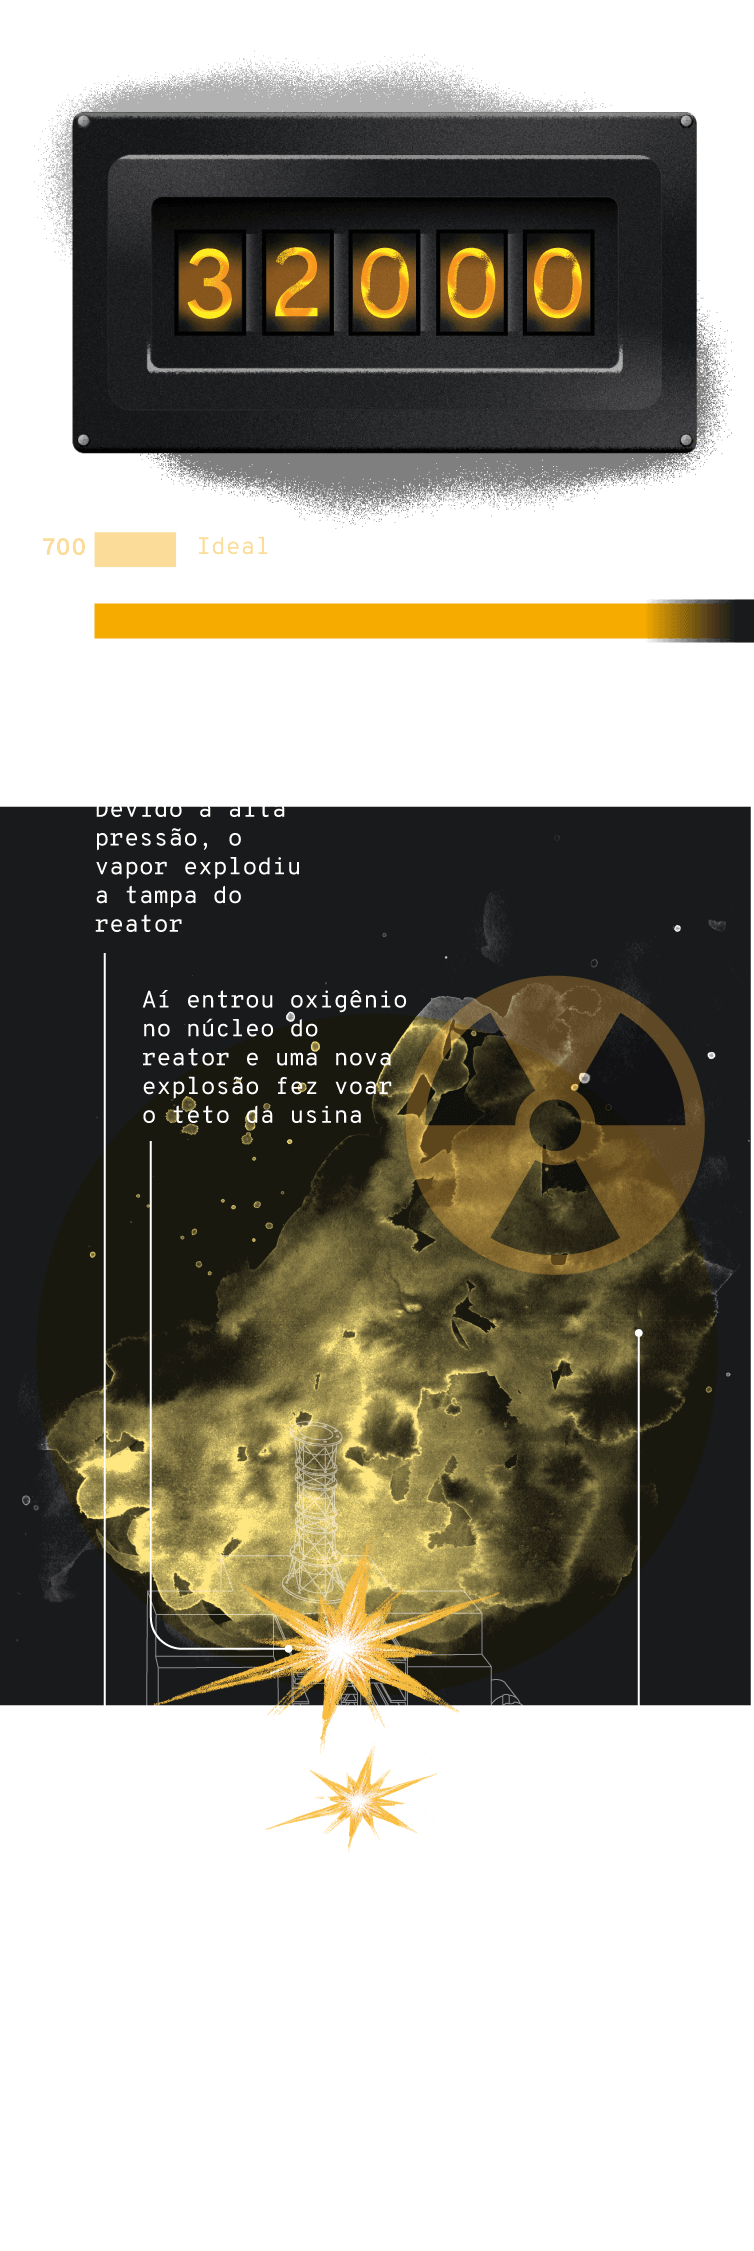 Infográfico: Descontrole da potência do reator de Chernobil